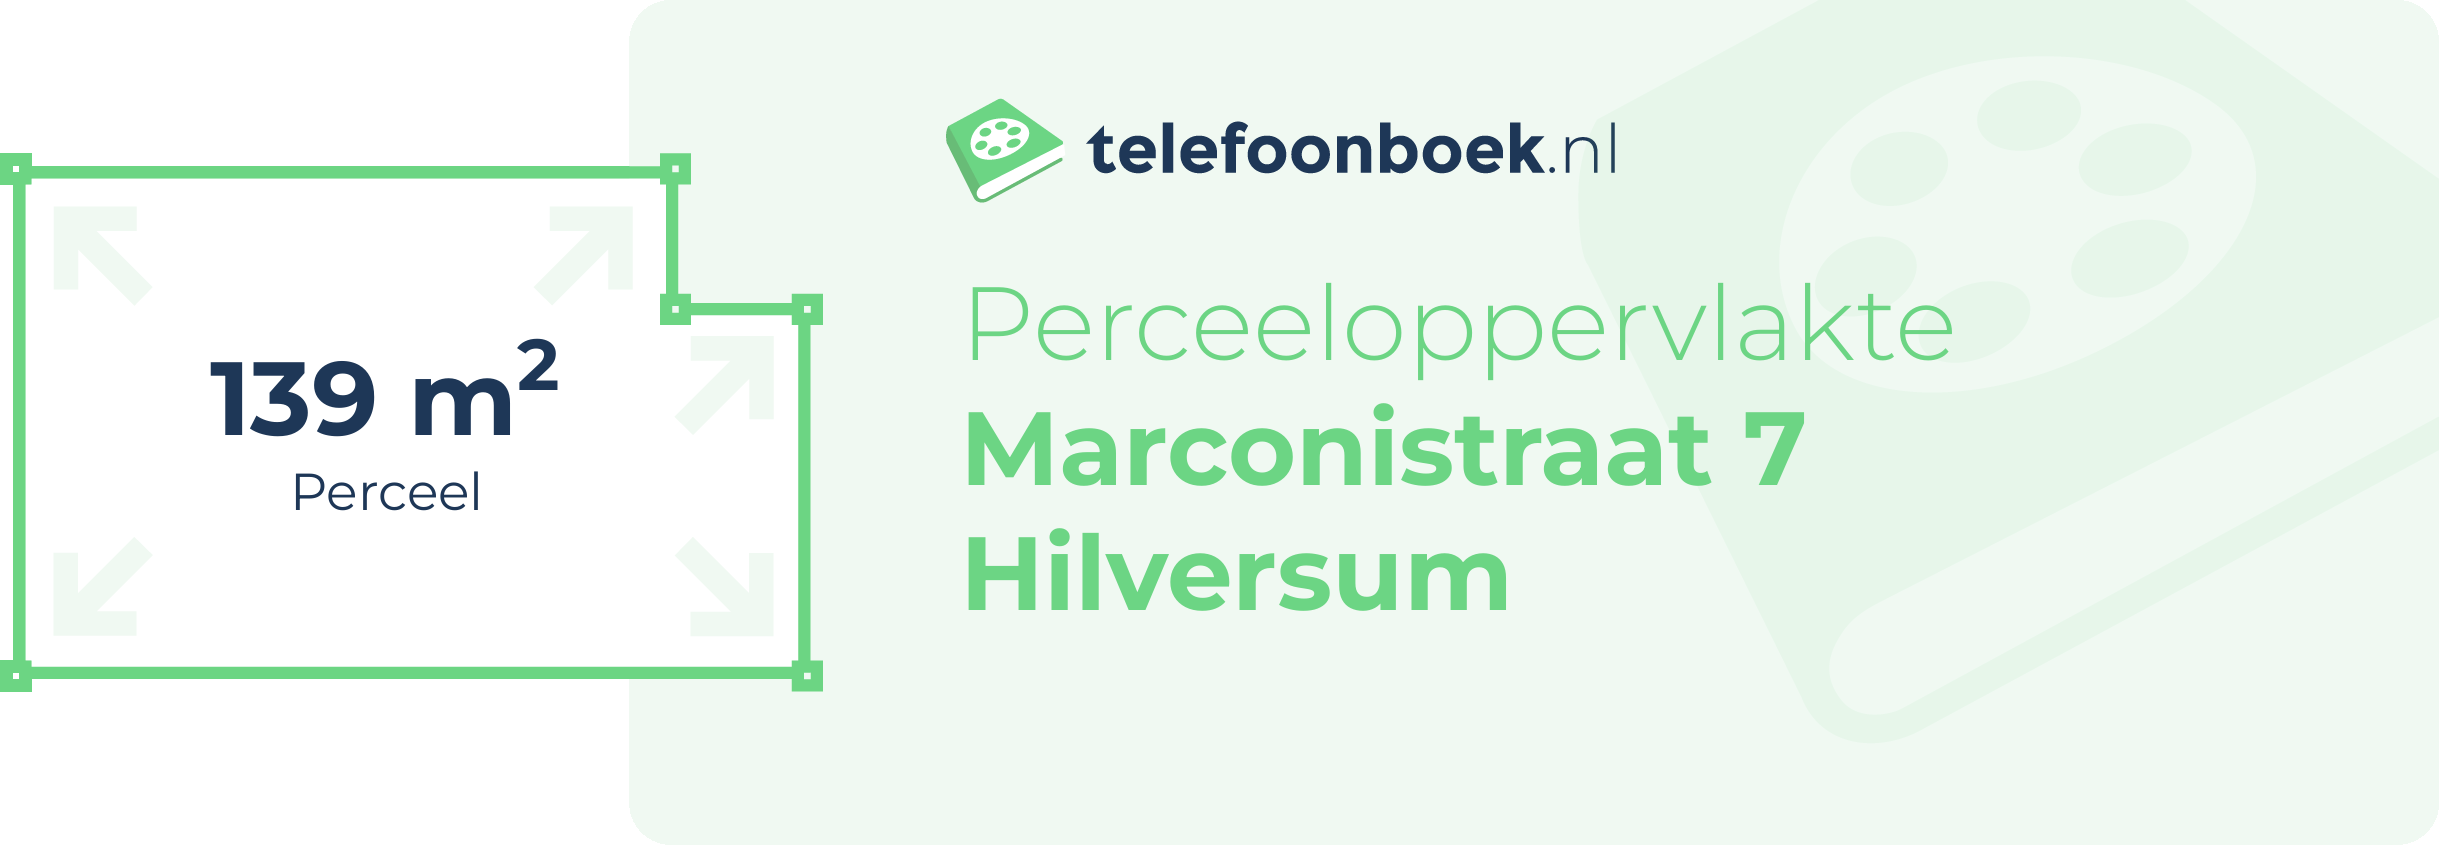 Perceeloppervlakte Marconistraat 7 Hilversum